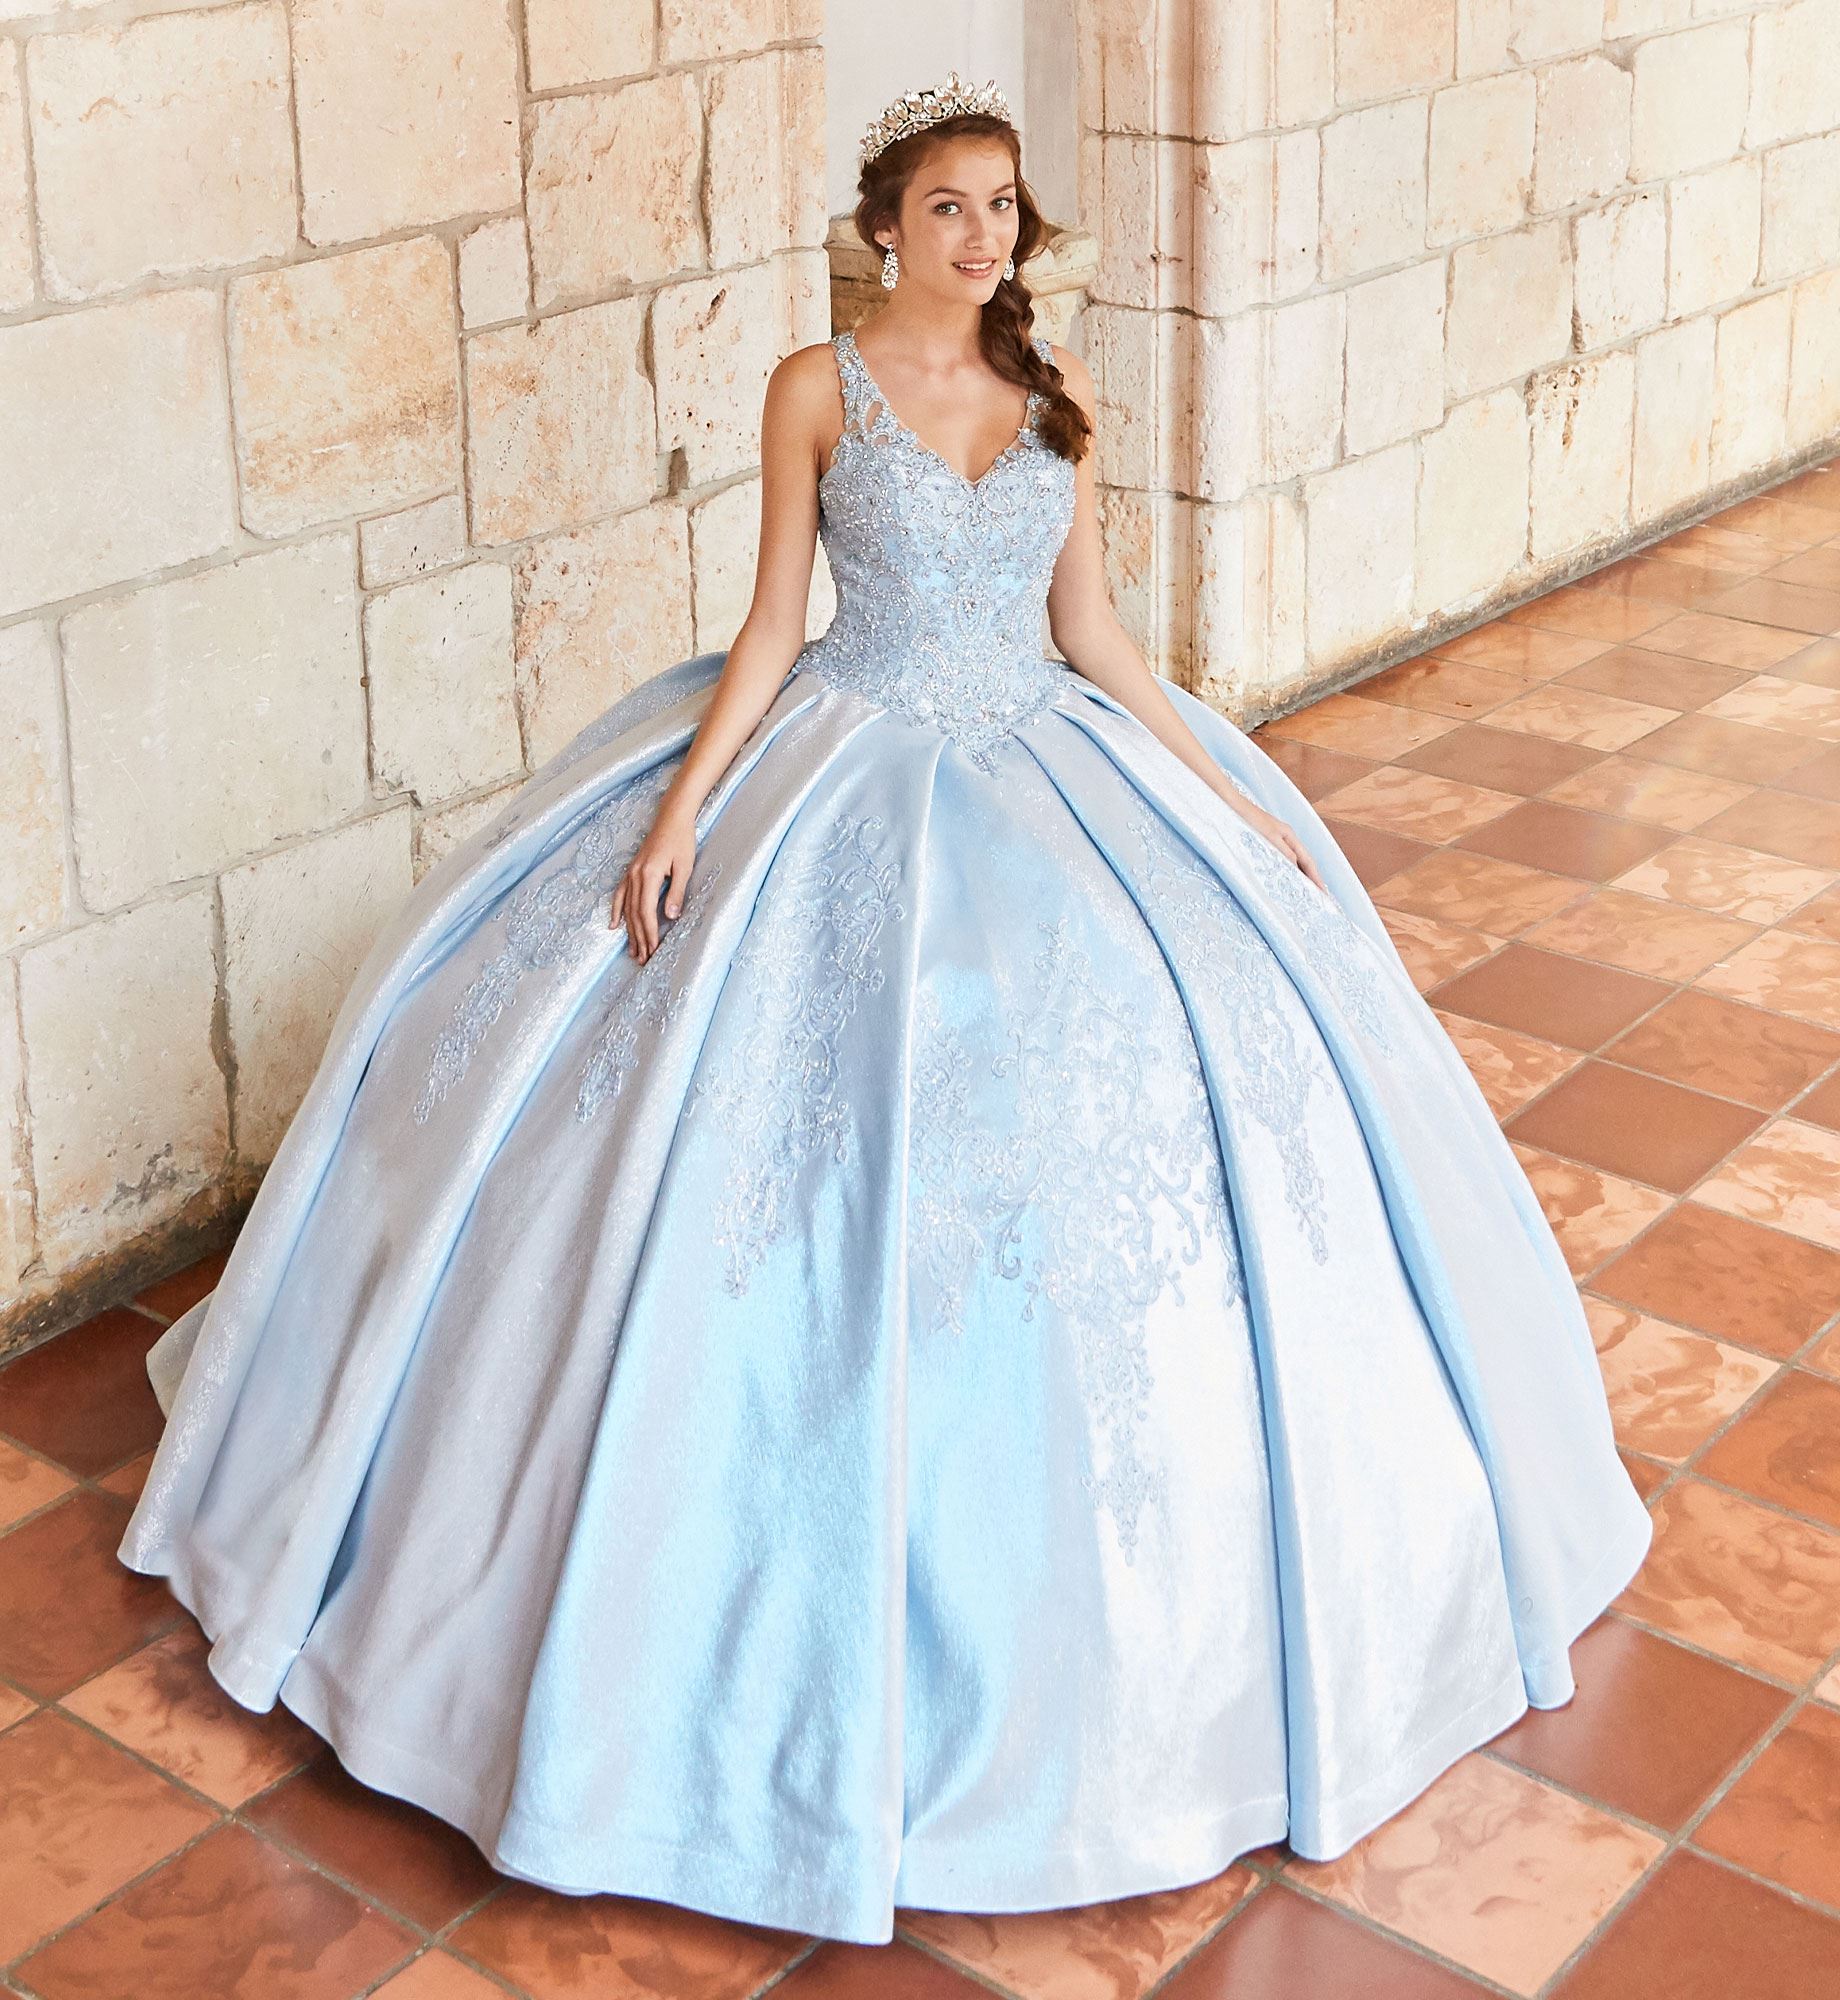 Brunette model in a blue quinceañera dress and tiara